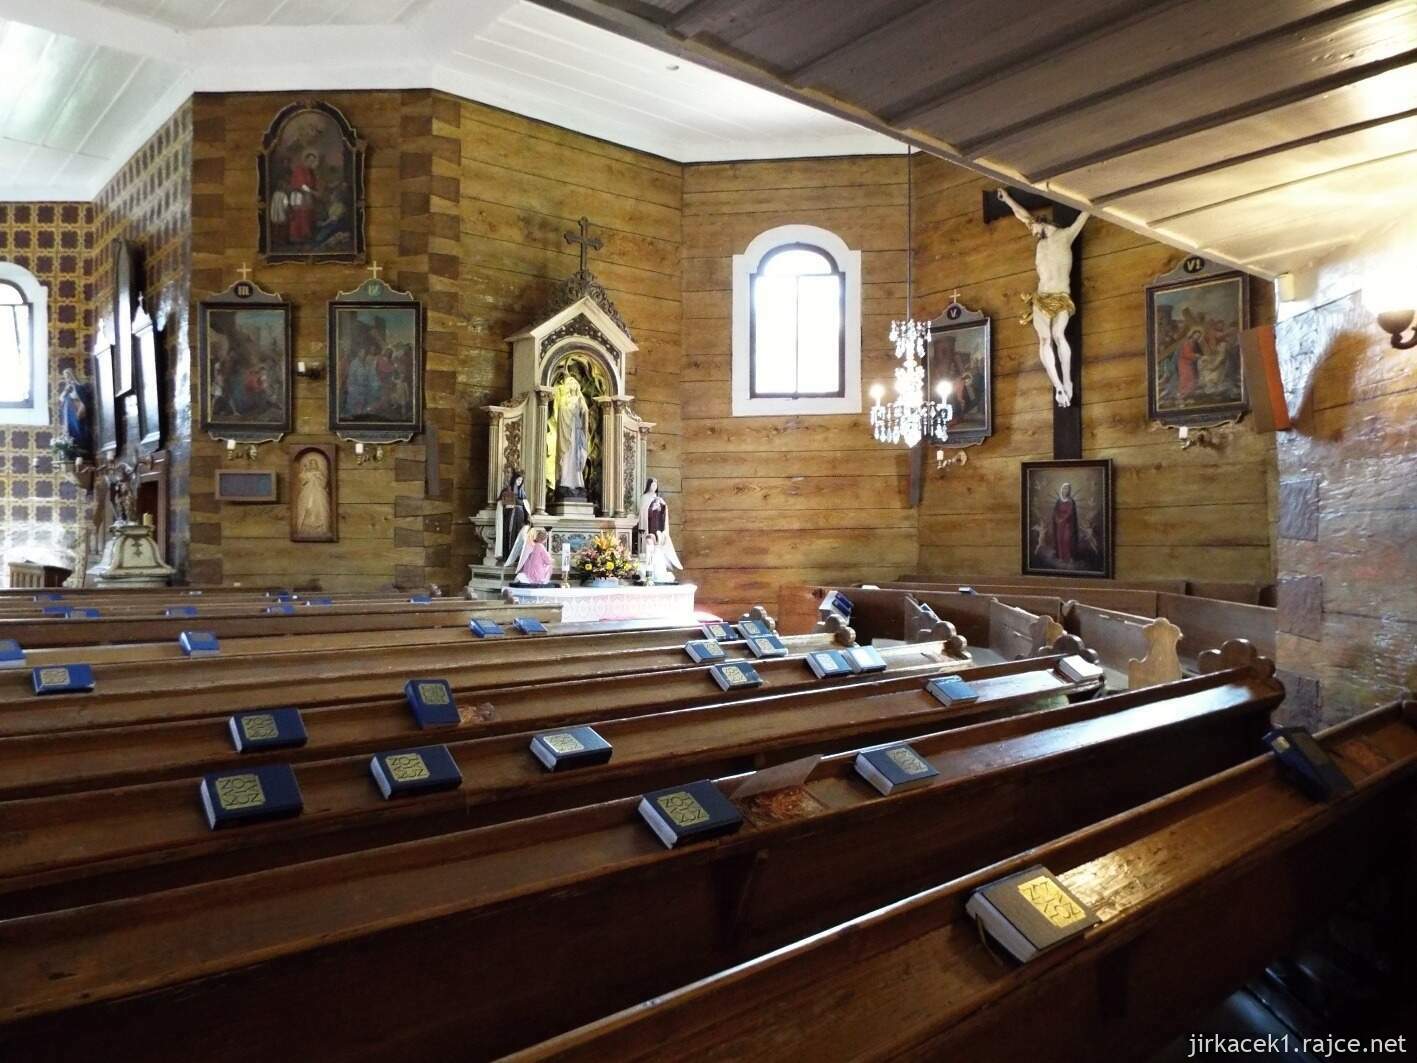 021 - Velké Karlovice - Kostel Panny Marie Sněžné 10 - interiér kostela - kopie